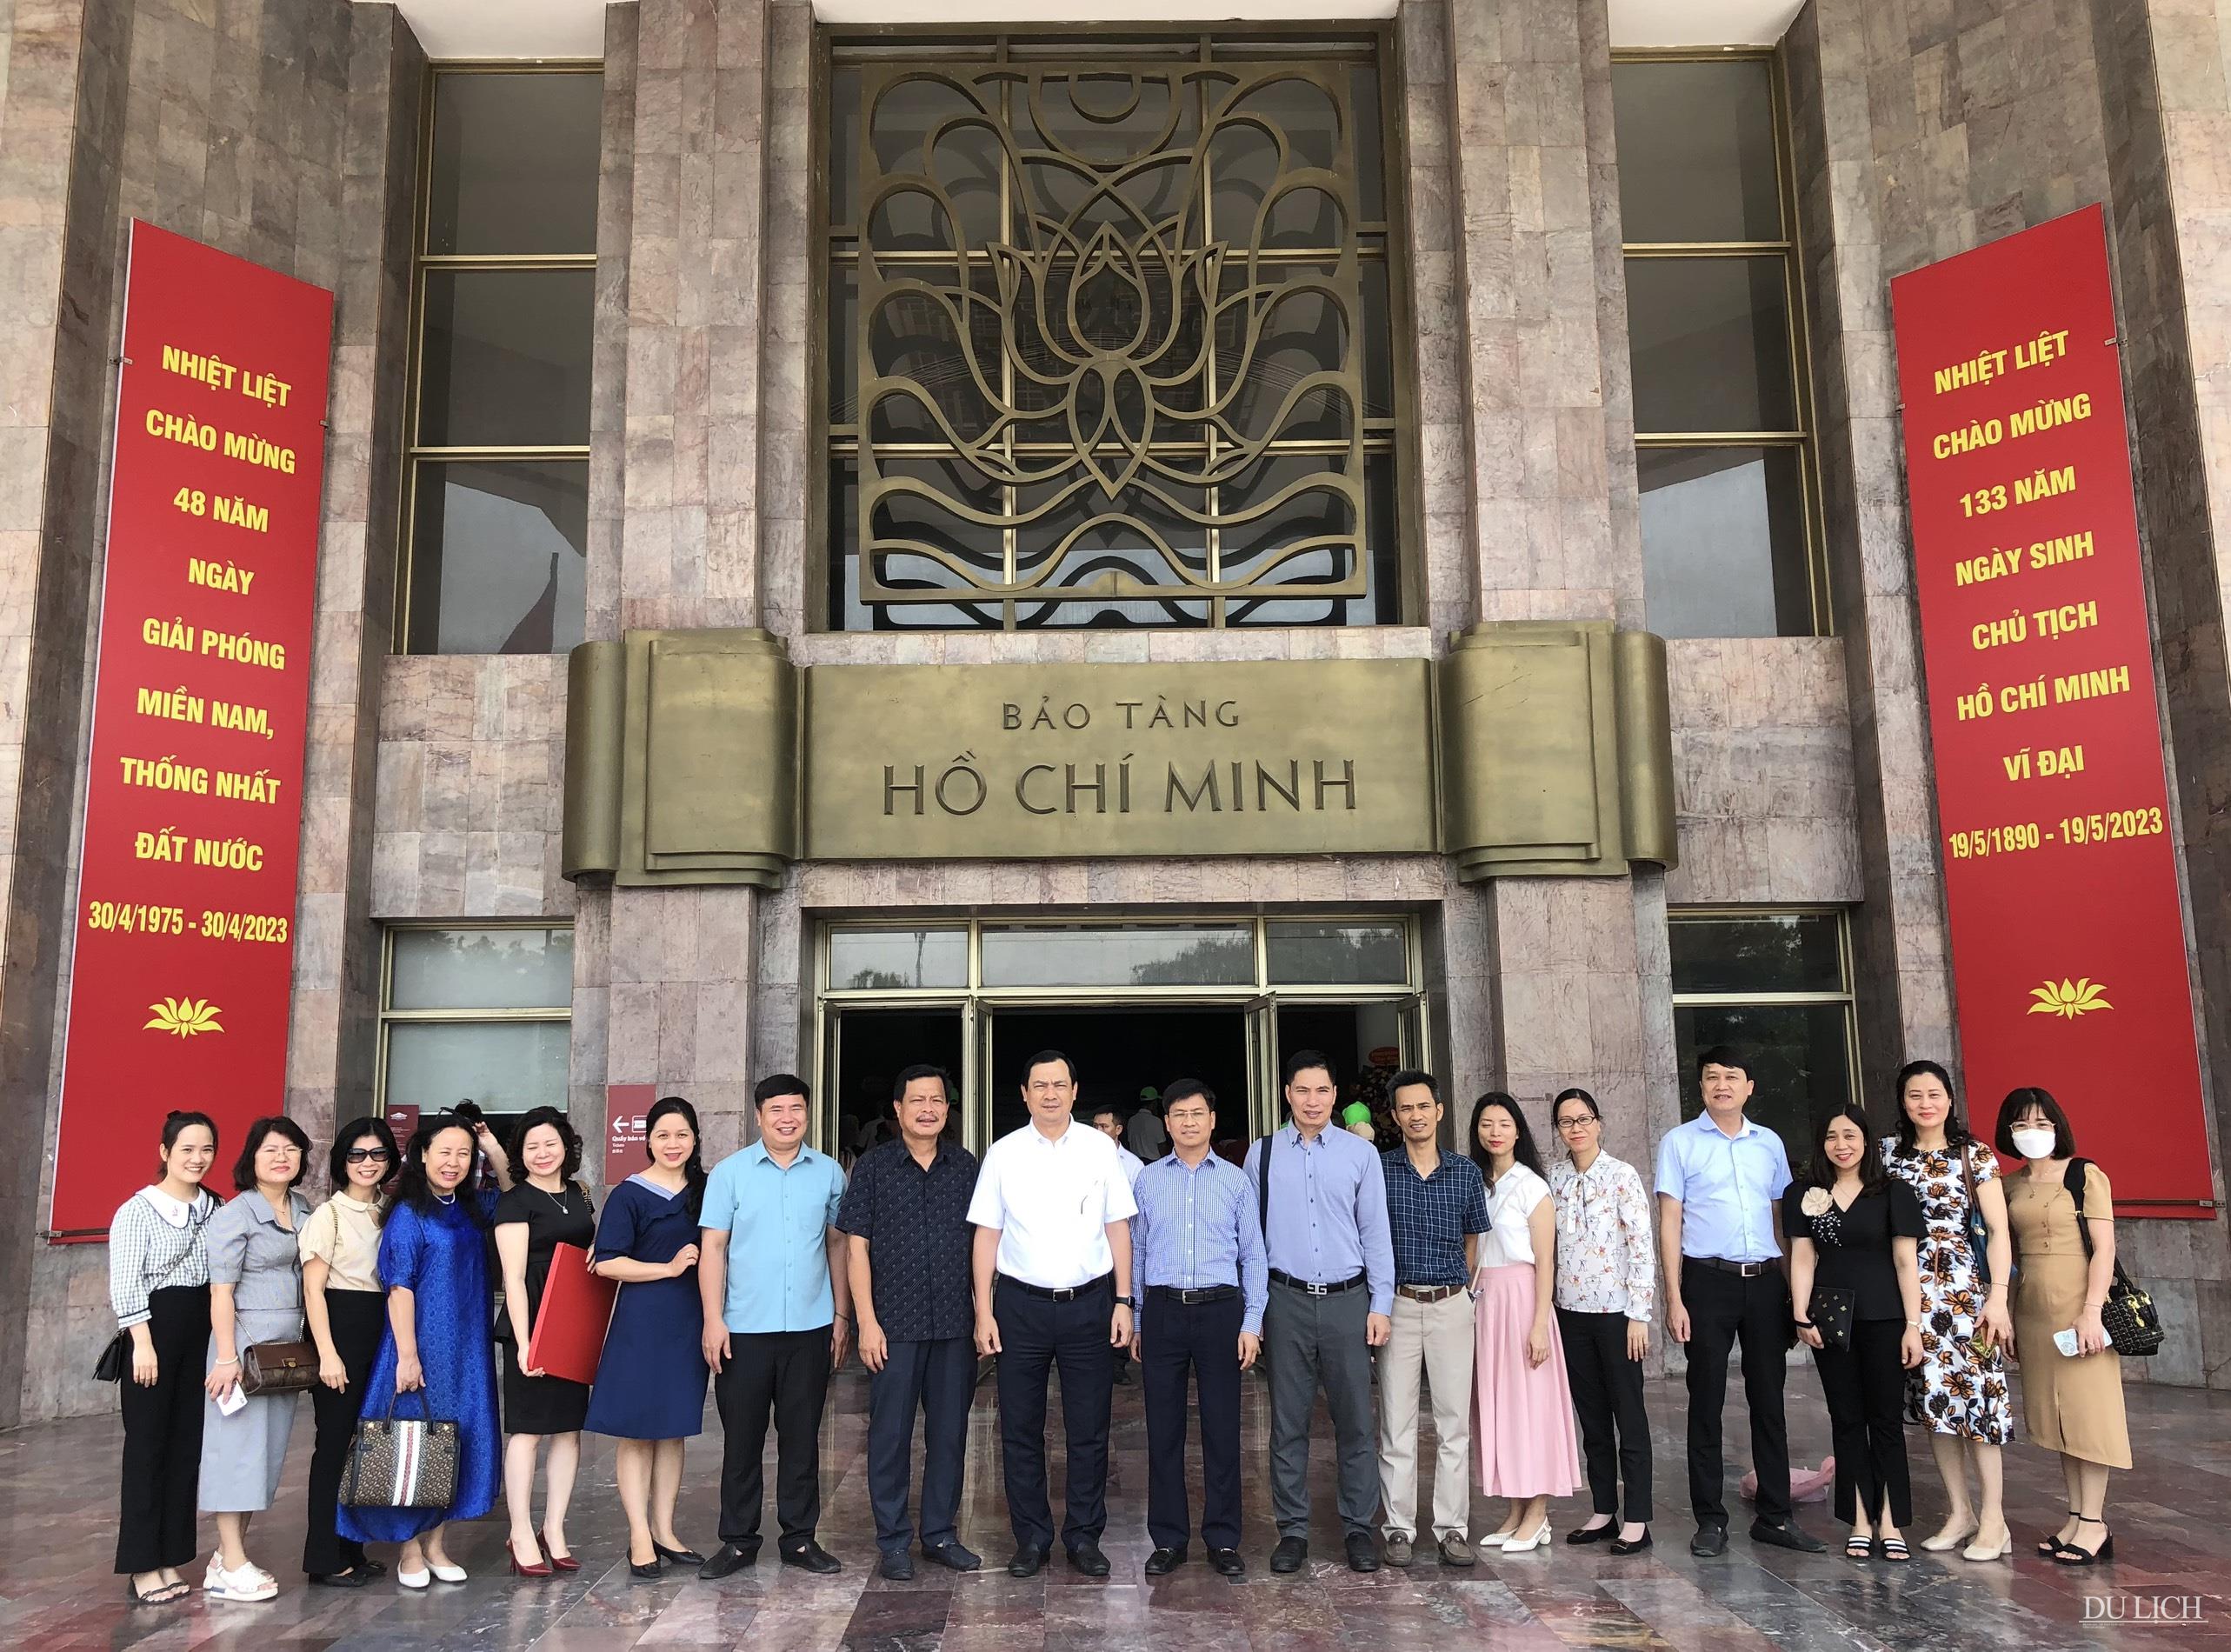 Đoàn chụp ảnh lưu niệm tại Bảo tàng Hồ Chí Minh